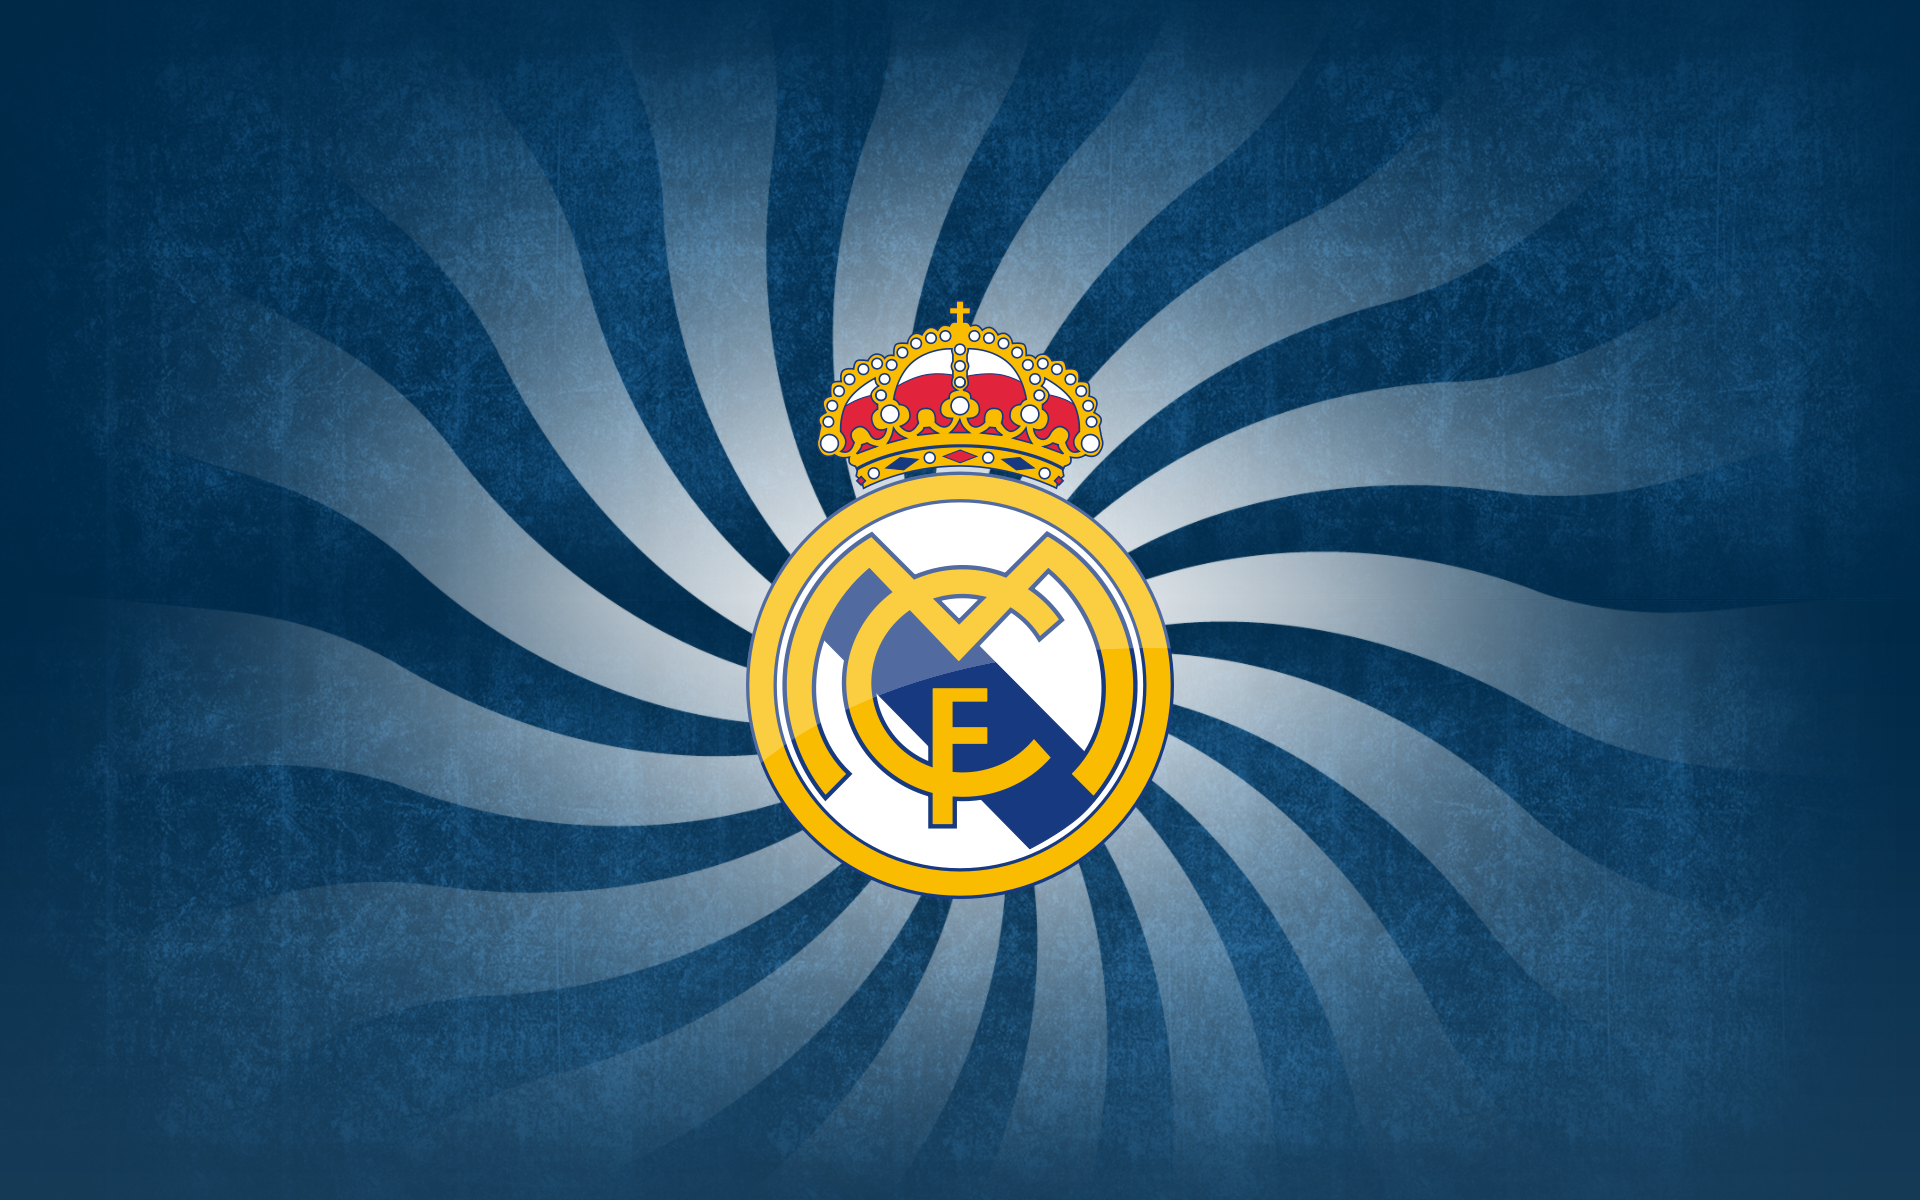 Bộ Sưu Tập Hình Nền Real Madrid Cực Chất Full 4K Với Hơn 999 Hình Nền